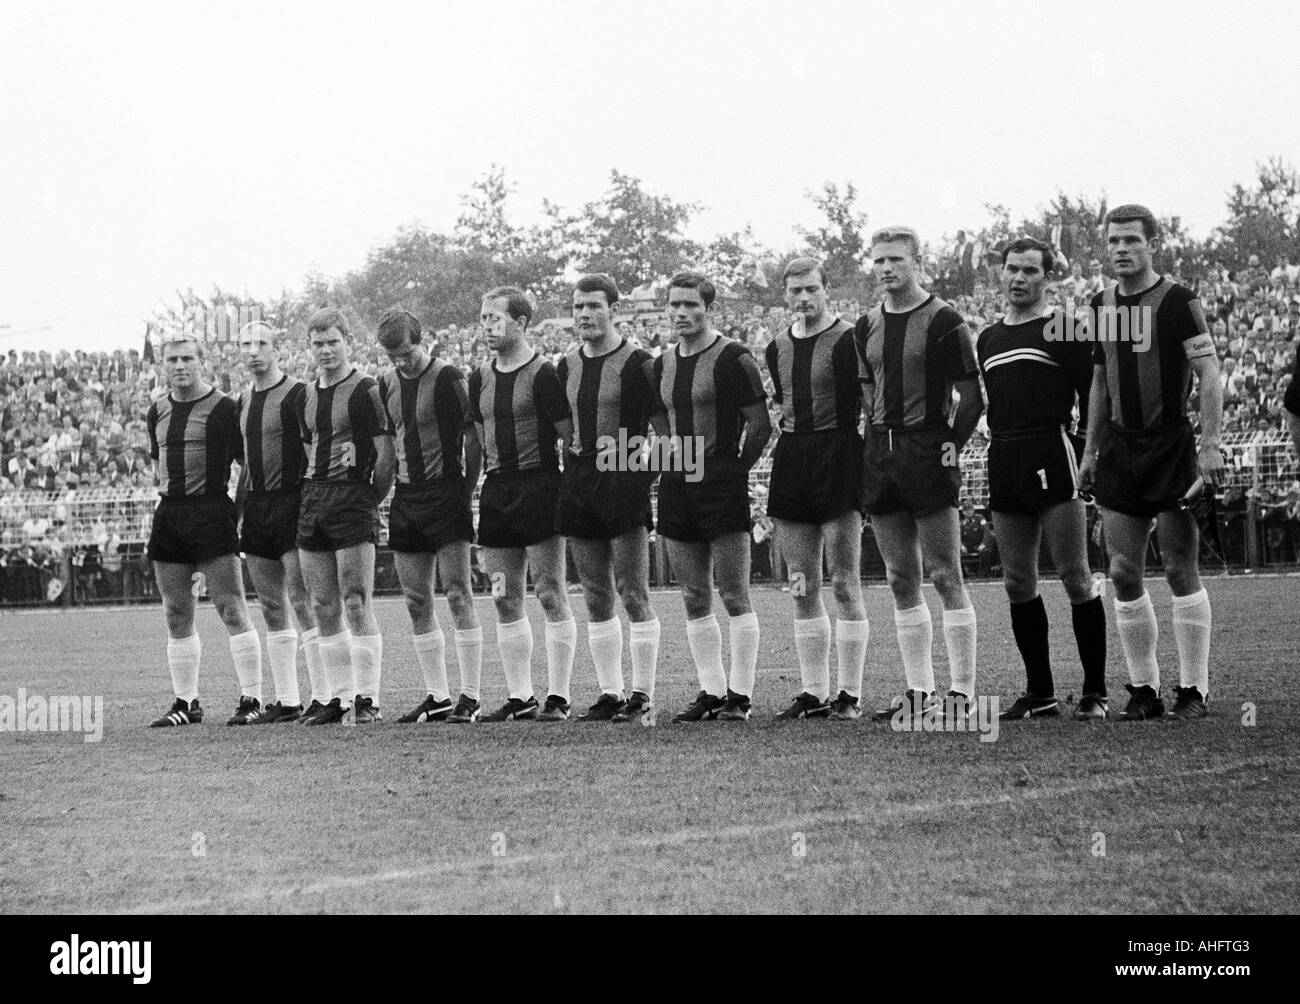 football, Regionalliga 1967/1968, promotion match to the Bundesliga 1968/1969, Bayer Leverkusen versus TuS Neuendorf 1:1, Ulrich Haberland Stadium in Leverkusen, team photograph, shot of the Neuendorf team, f.l.t.r. Guenter Funke, Bernd Vogtmann, Helmut H Stock Photo